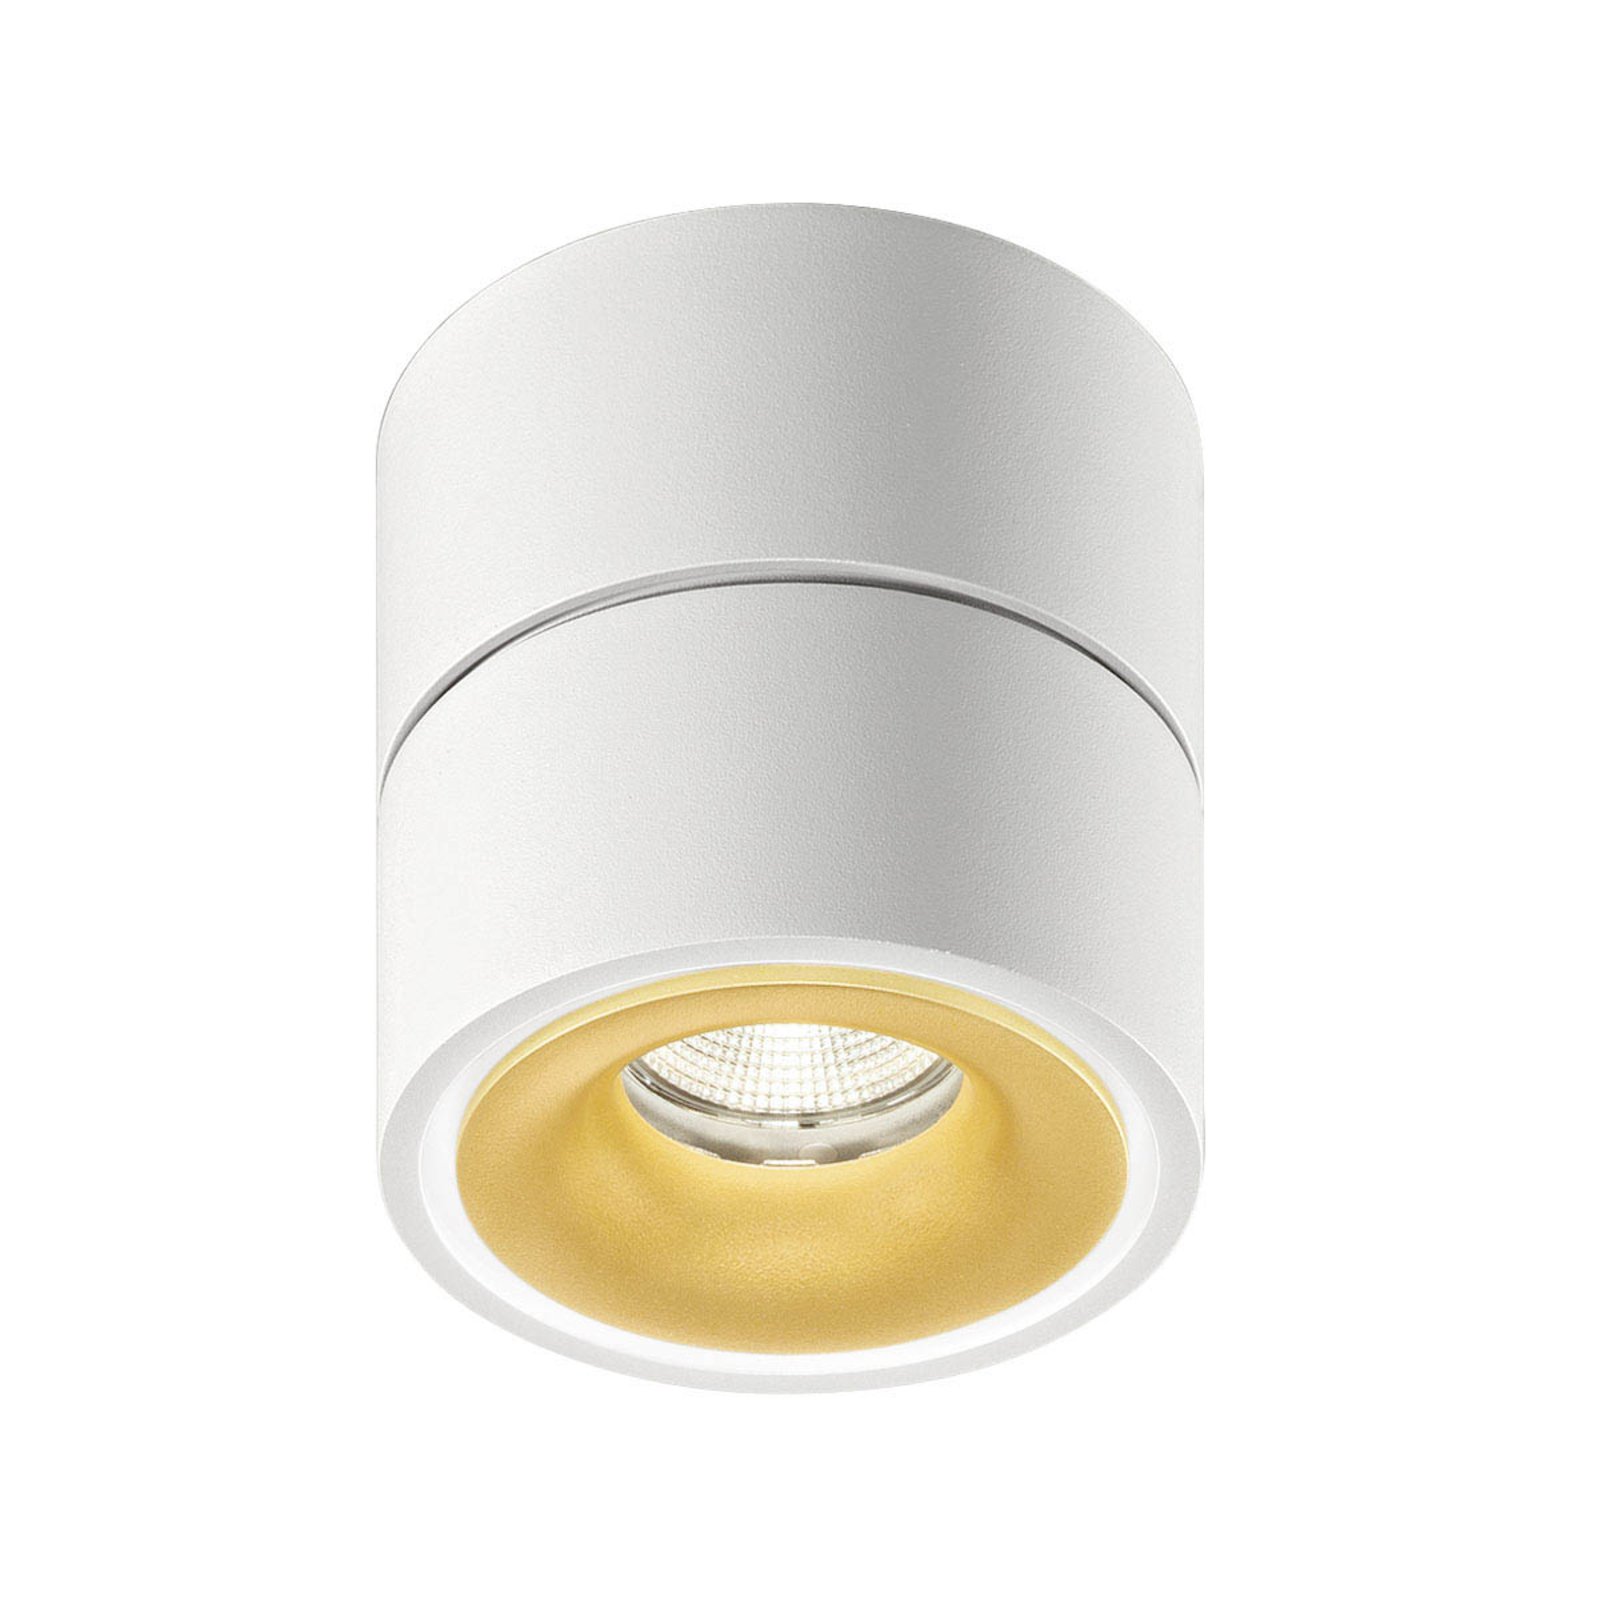 Egger Clippo S LED downlight, white/gold